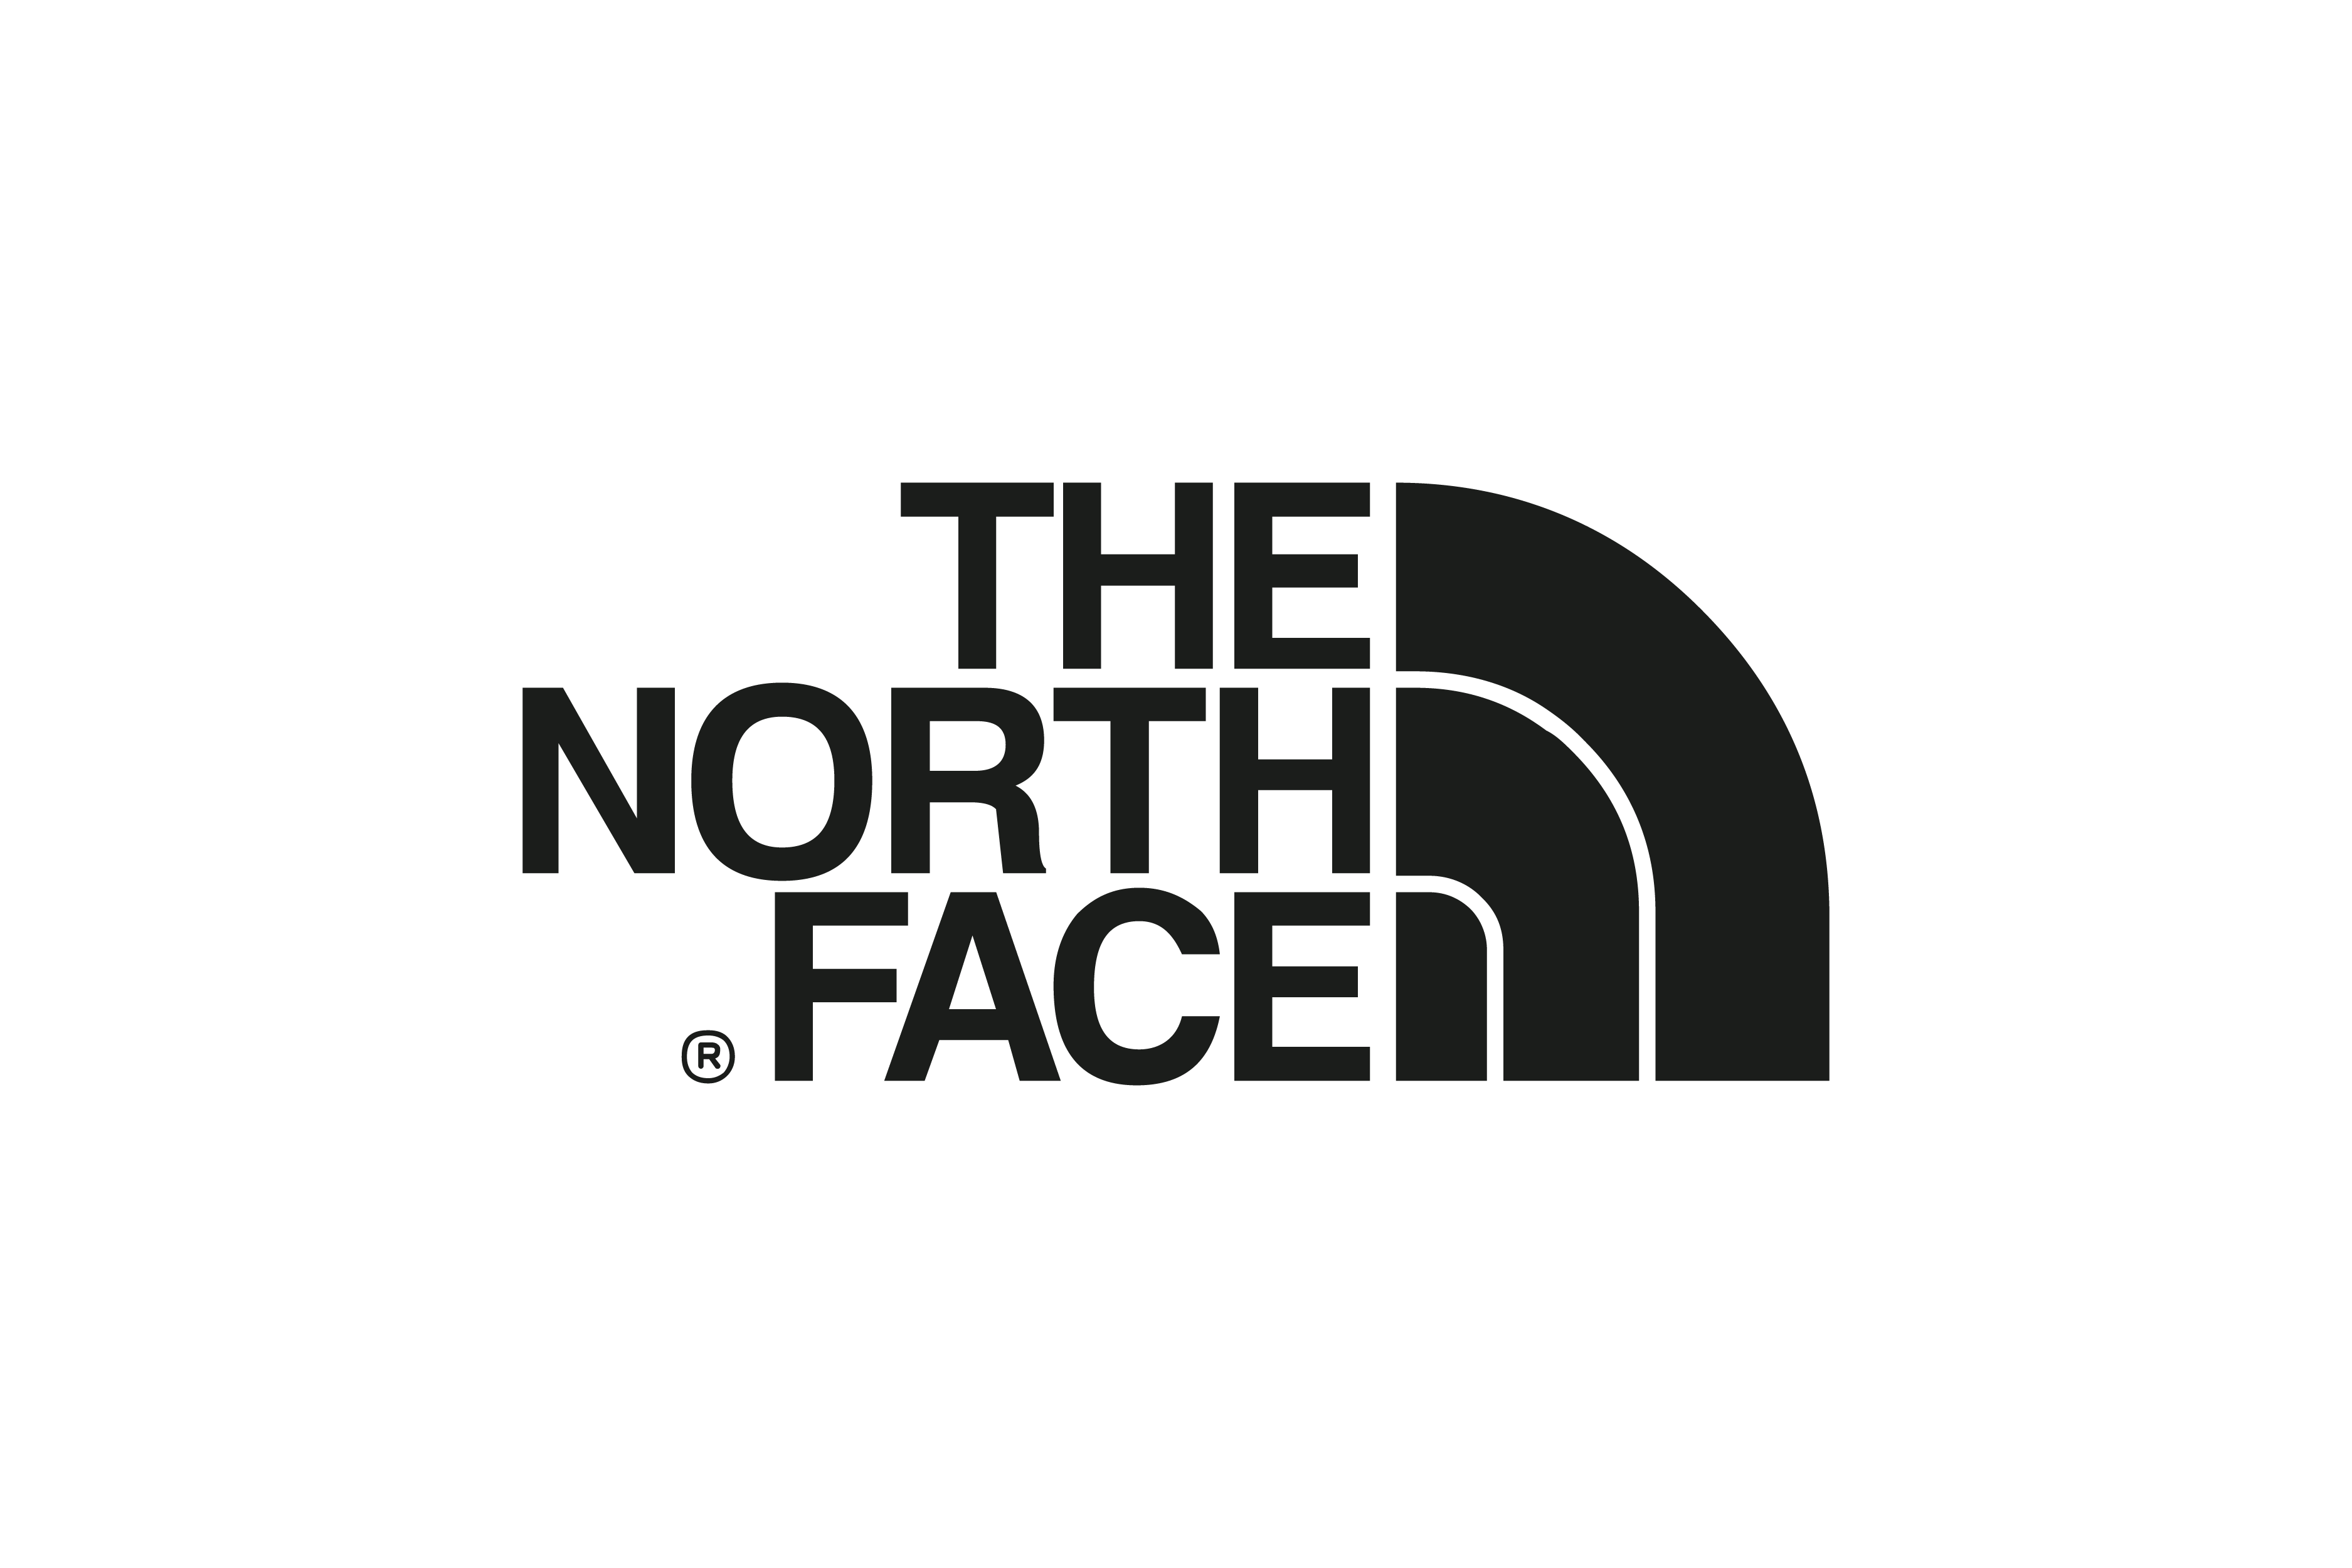 THE NORTH FACEザ・ノース・フェイス　無料ロゴ素材イラストダウンロード 黒 ブラック